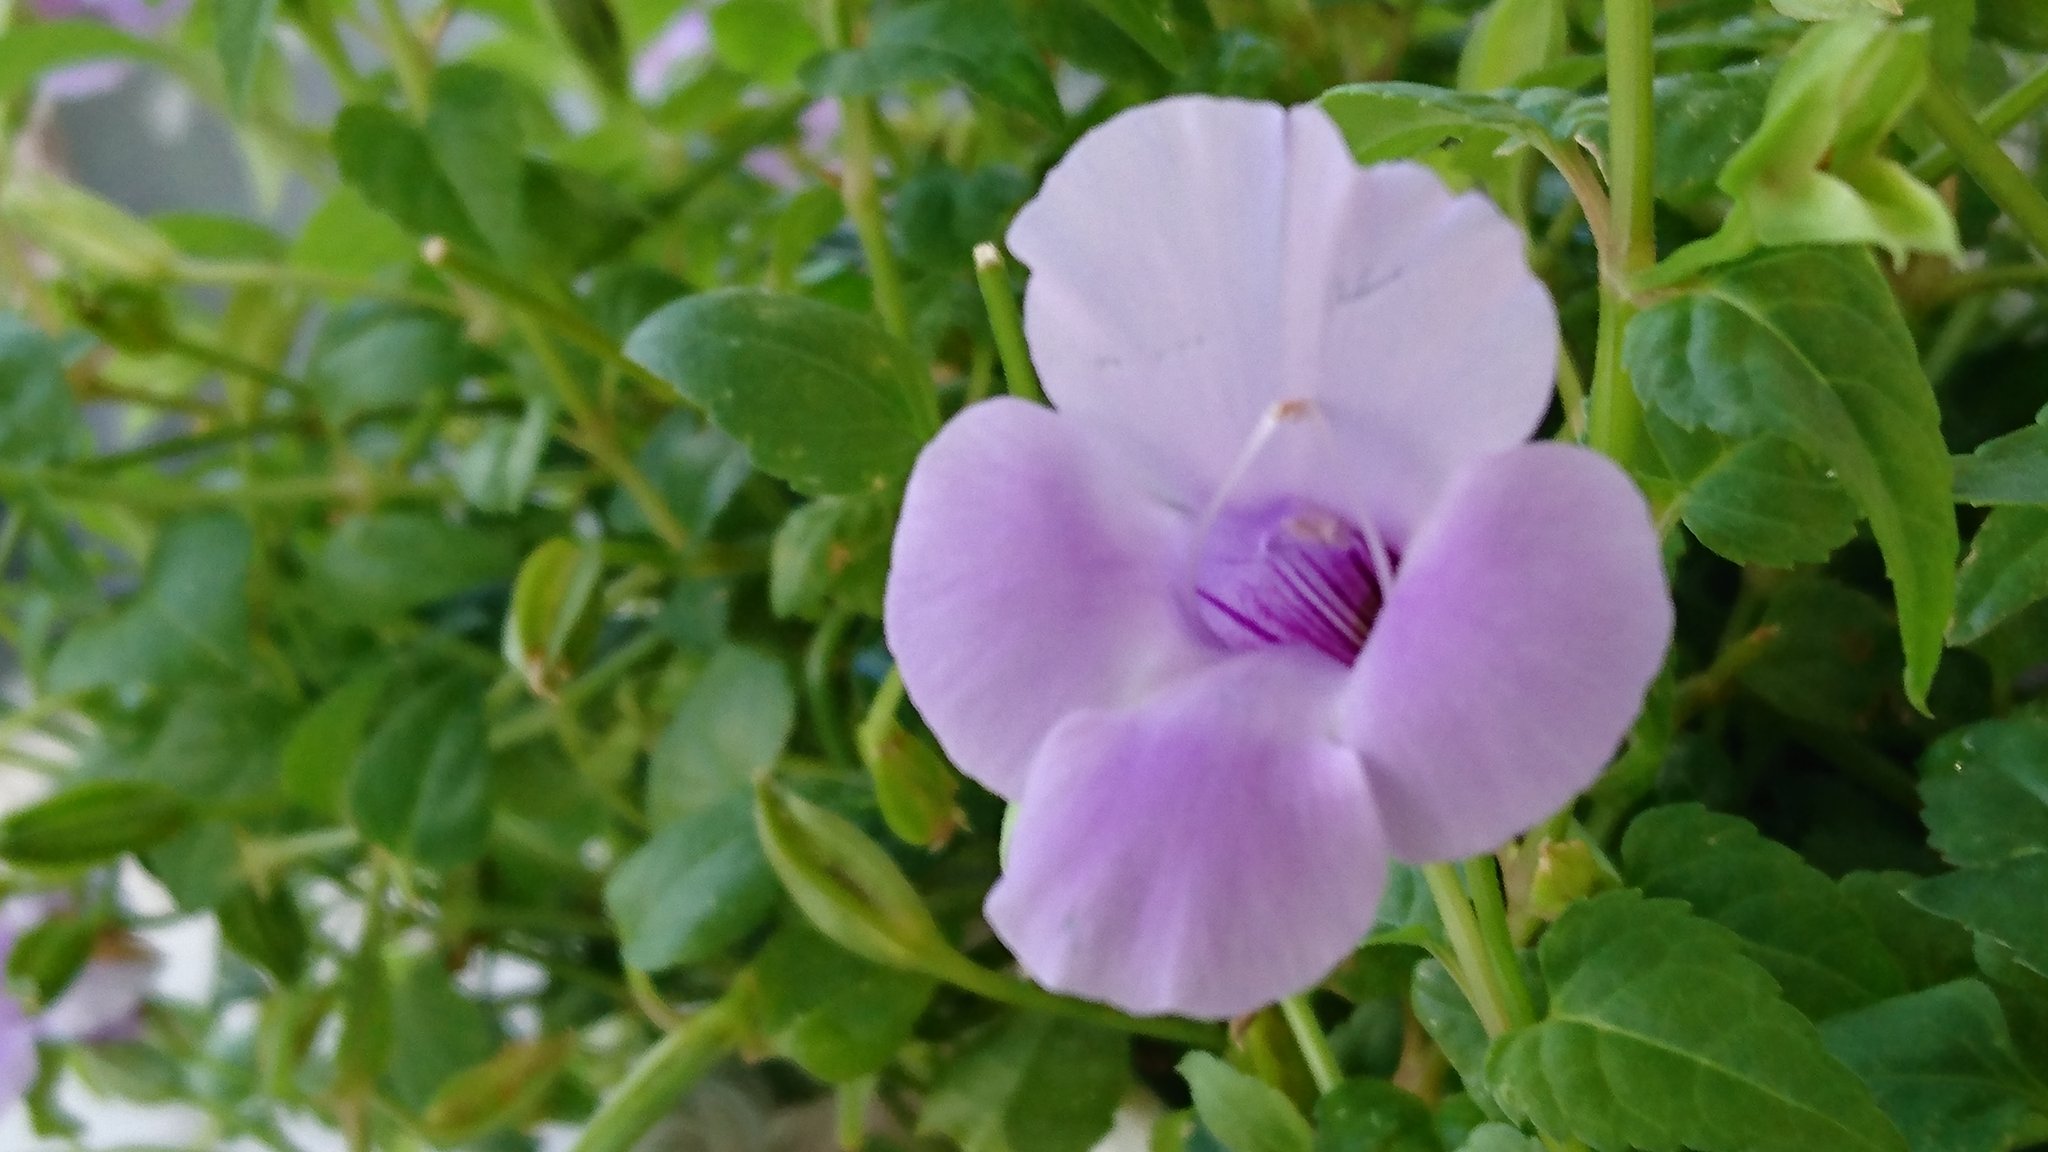 Ebimama ﾄﾚﾆｱ ｶﾀﾘｰﾅ ﾌﾞﾙｰﾘﾊﾞｰ トレニア 花言葉 ひらめき 夏の終わり バッサリ刈り込まれ また 新しくﾆｮｷﾆｮｷ 生えて咲いてる薄紫さん 此処で一句 何もひらめかーん 笑 おはようございます 日曜日 良い一日 で ありますよう